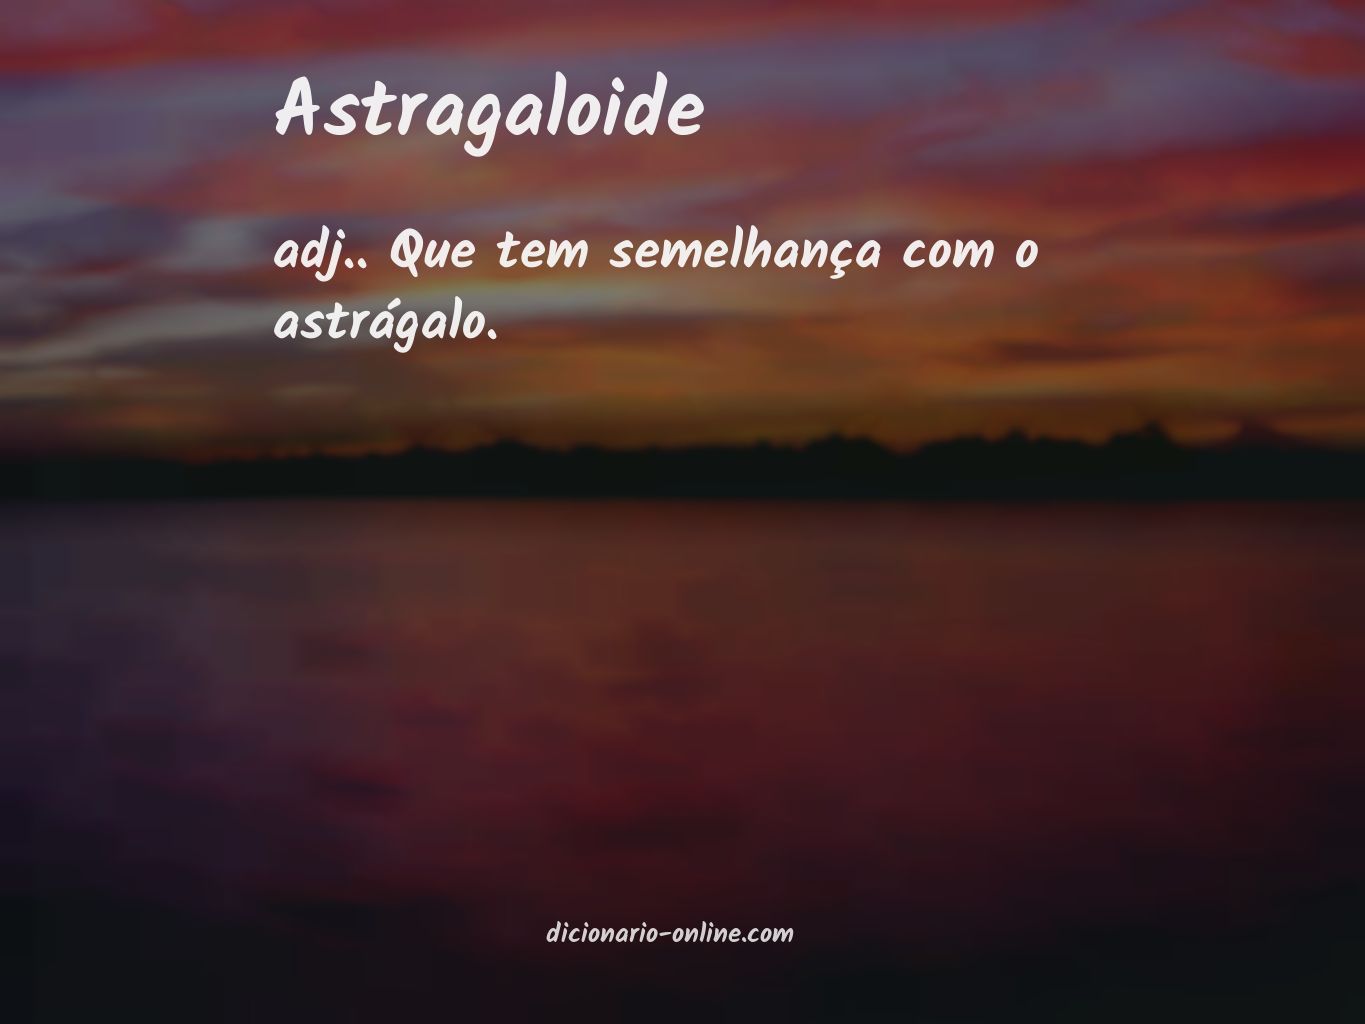 Significado de astragaloide